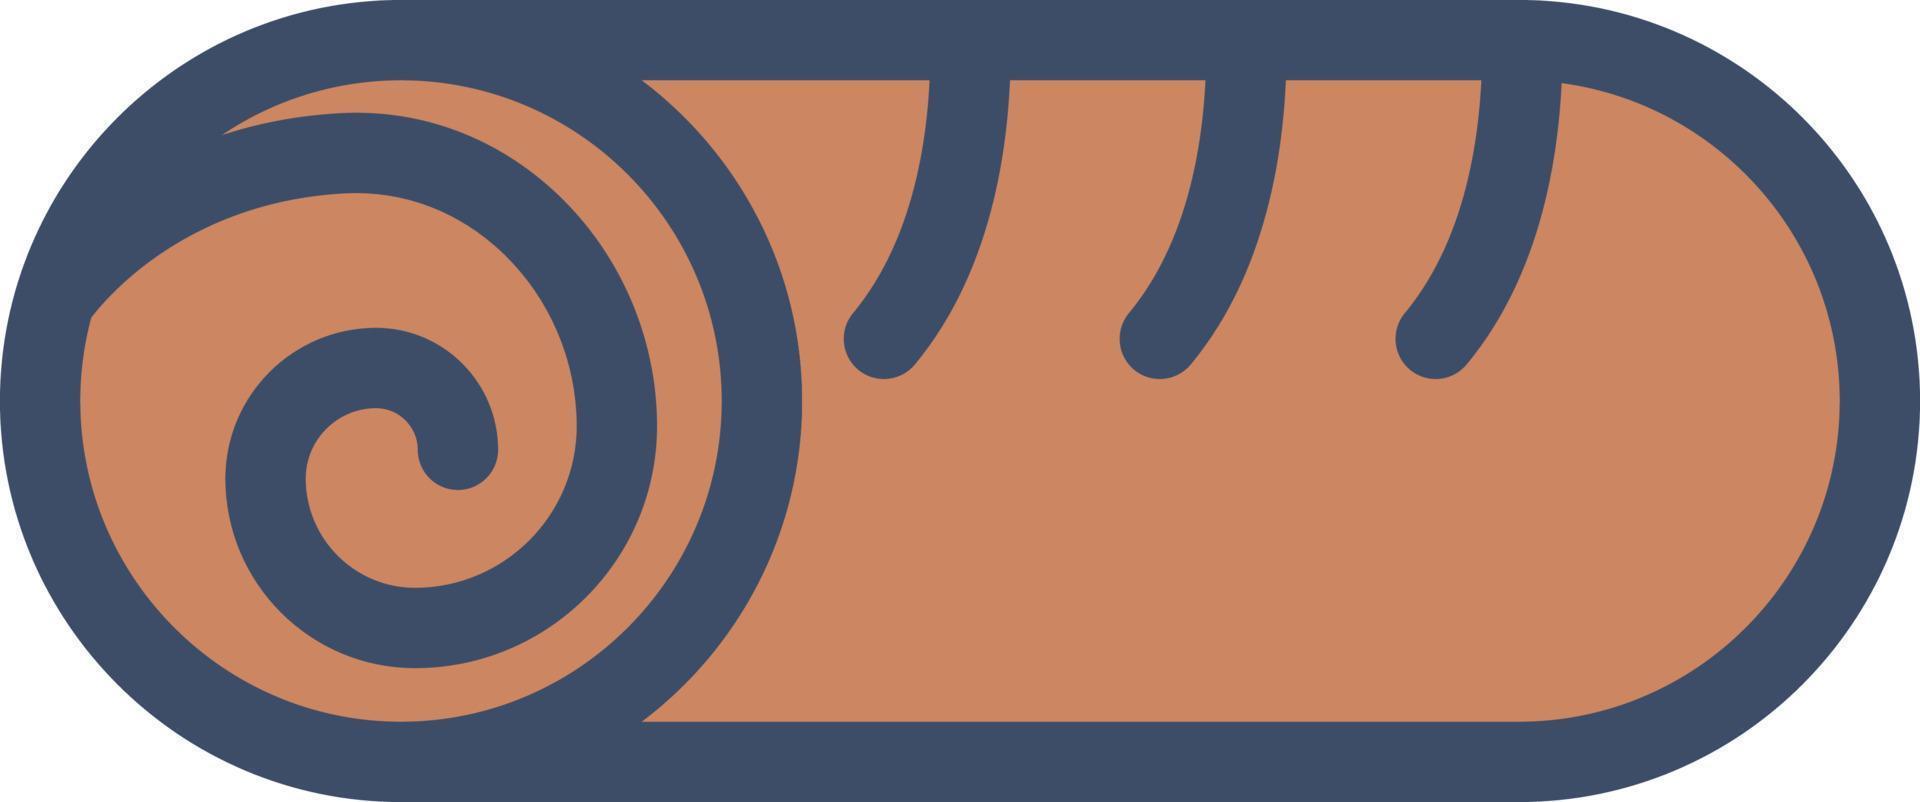 swiss rolls illustrazione vettoriale su uno sfondo simboli di qualità premium. icone vettoriali per il concetto e la progettazione grafica.